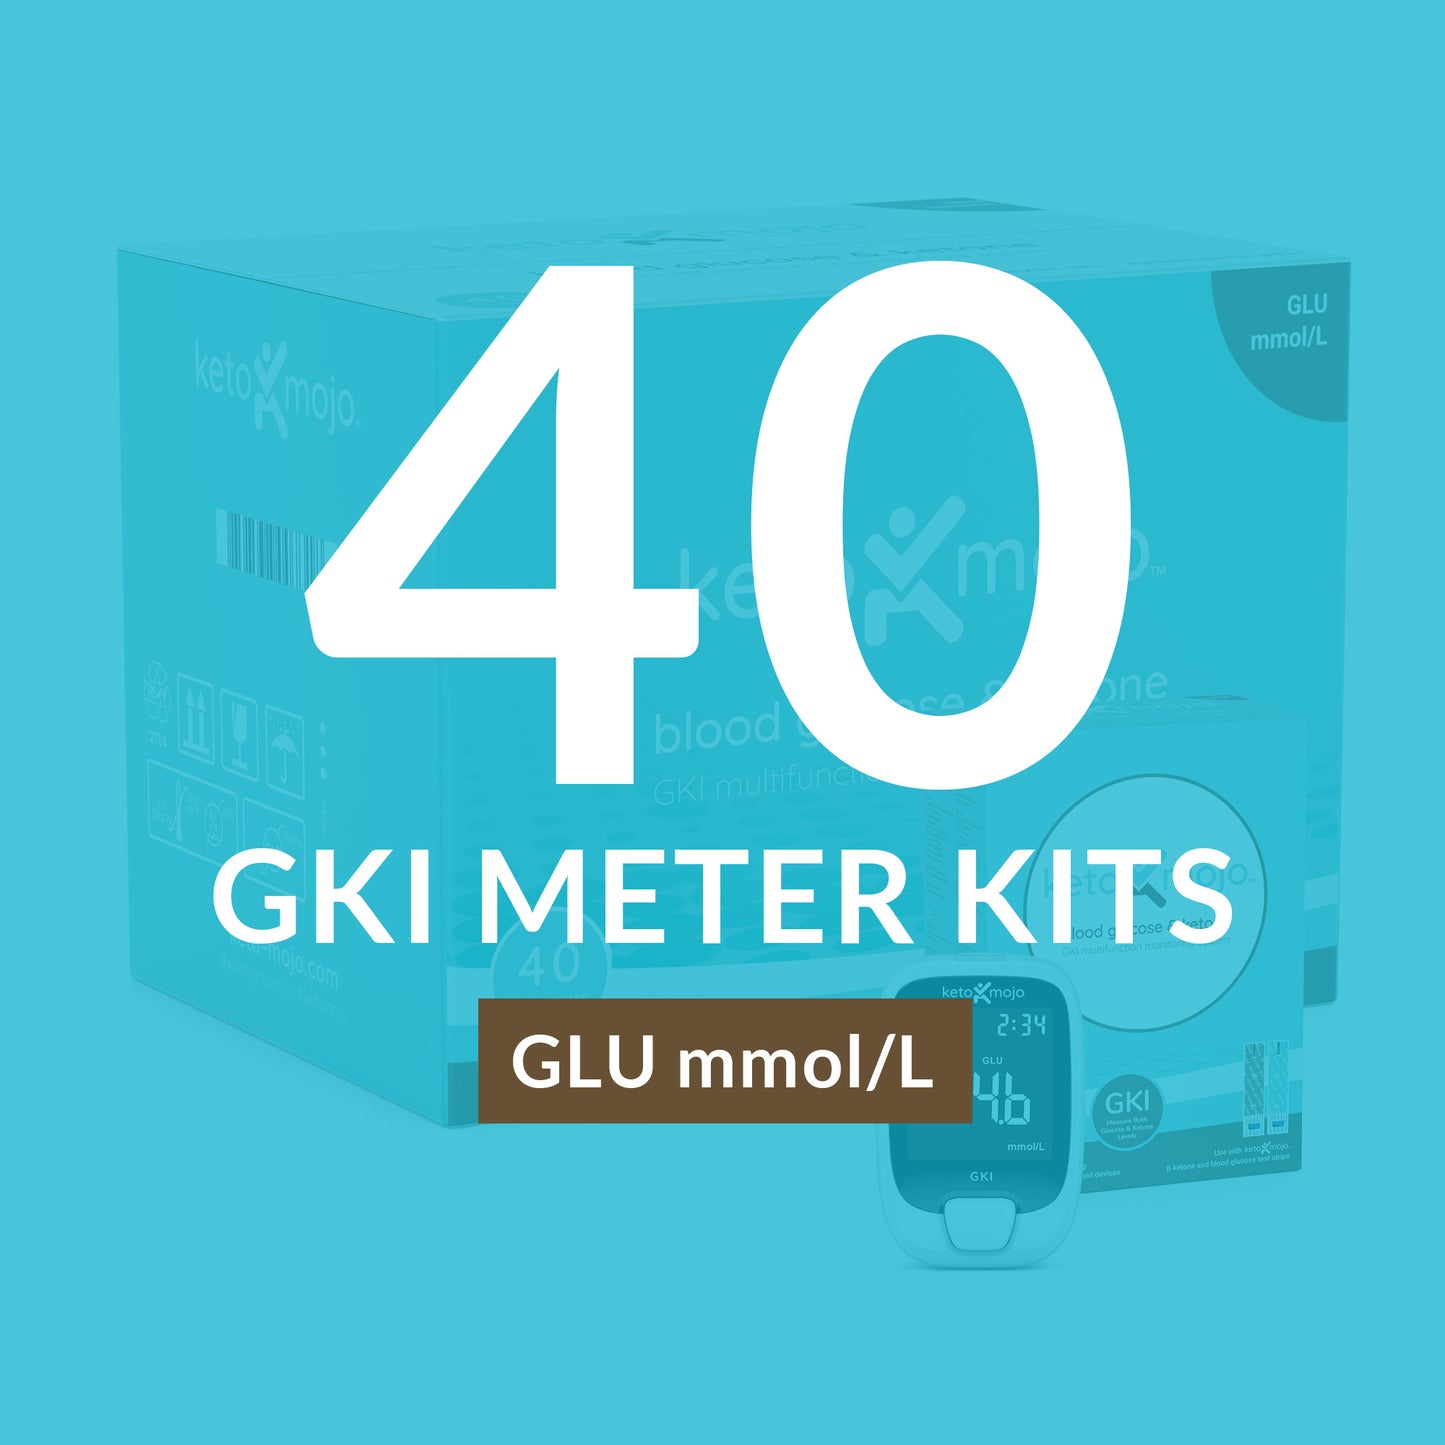 Mastercase GKI-Bluetooth Meter - BASIC STARTER KIT (40 упаковок) мг/дл